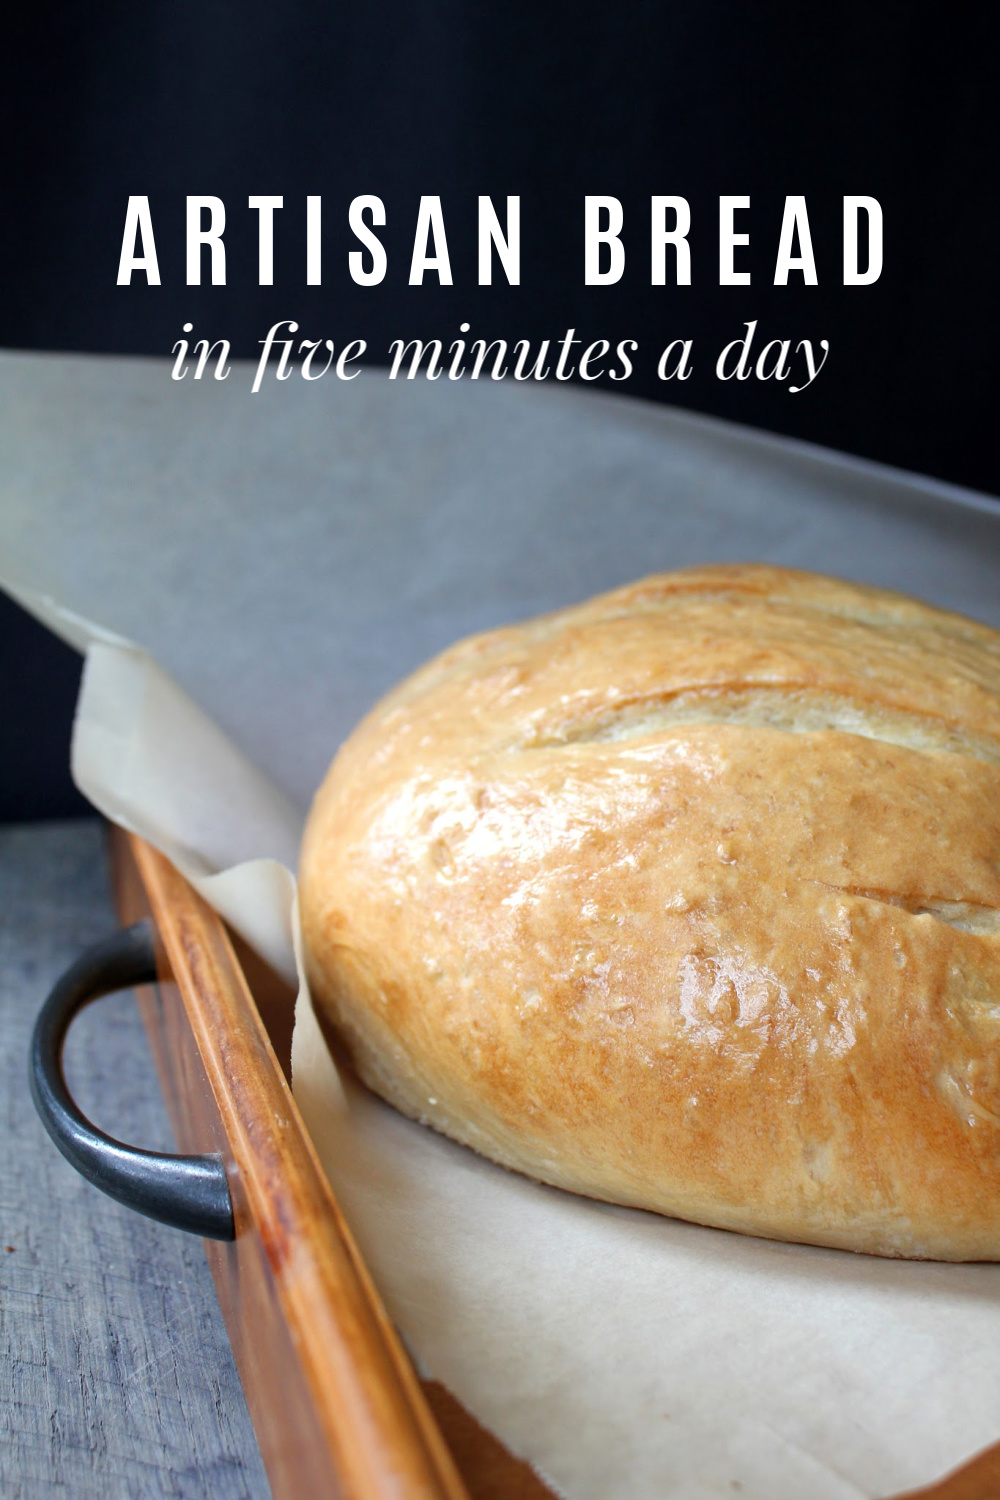 https://www.frugallivingnw.com/wp-content/uploads/2020/04/artisan-bread-recipe.jpg